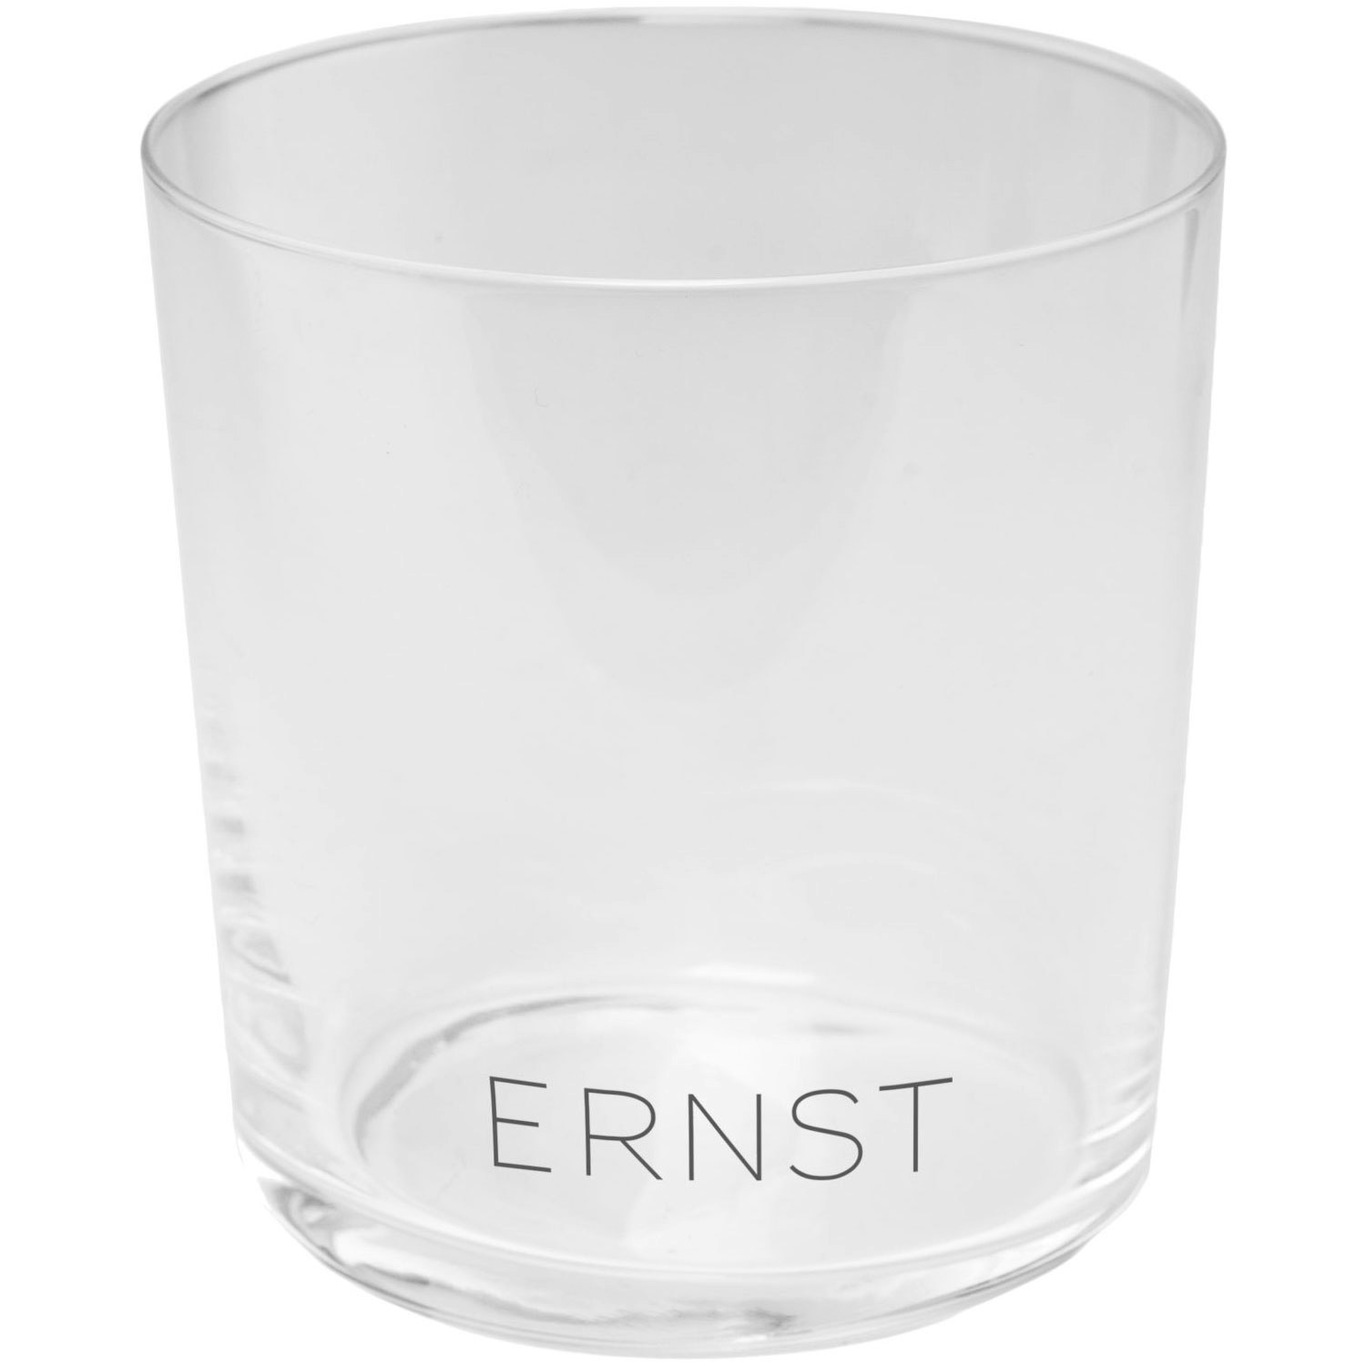 https://royaldesign.com/image/2/ernst-ernst-drinking-glass-8-pack-2?w=800&quality=80